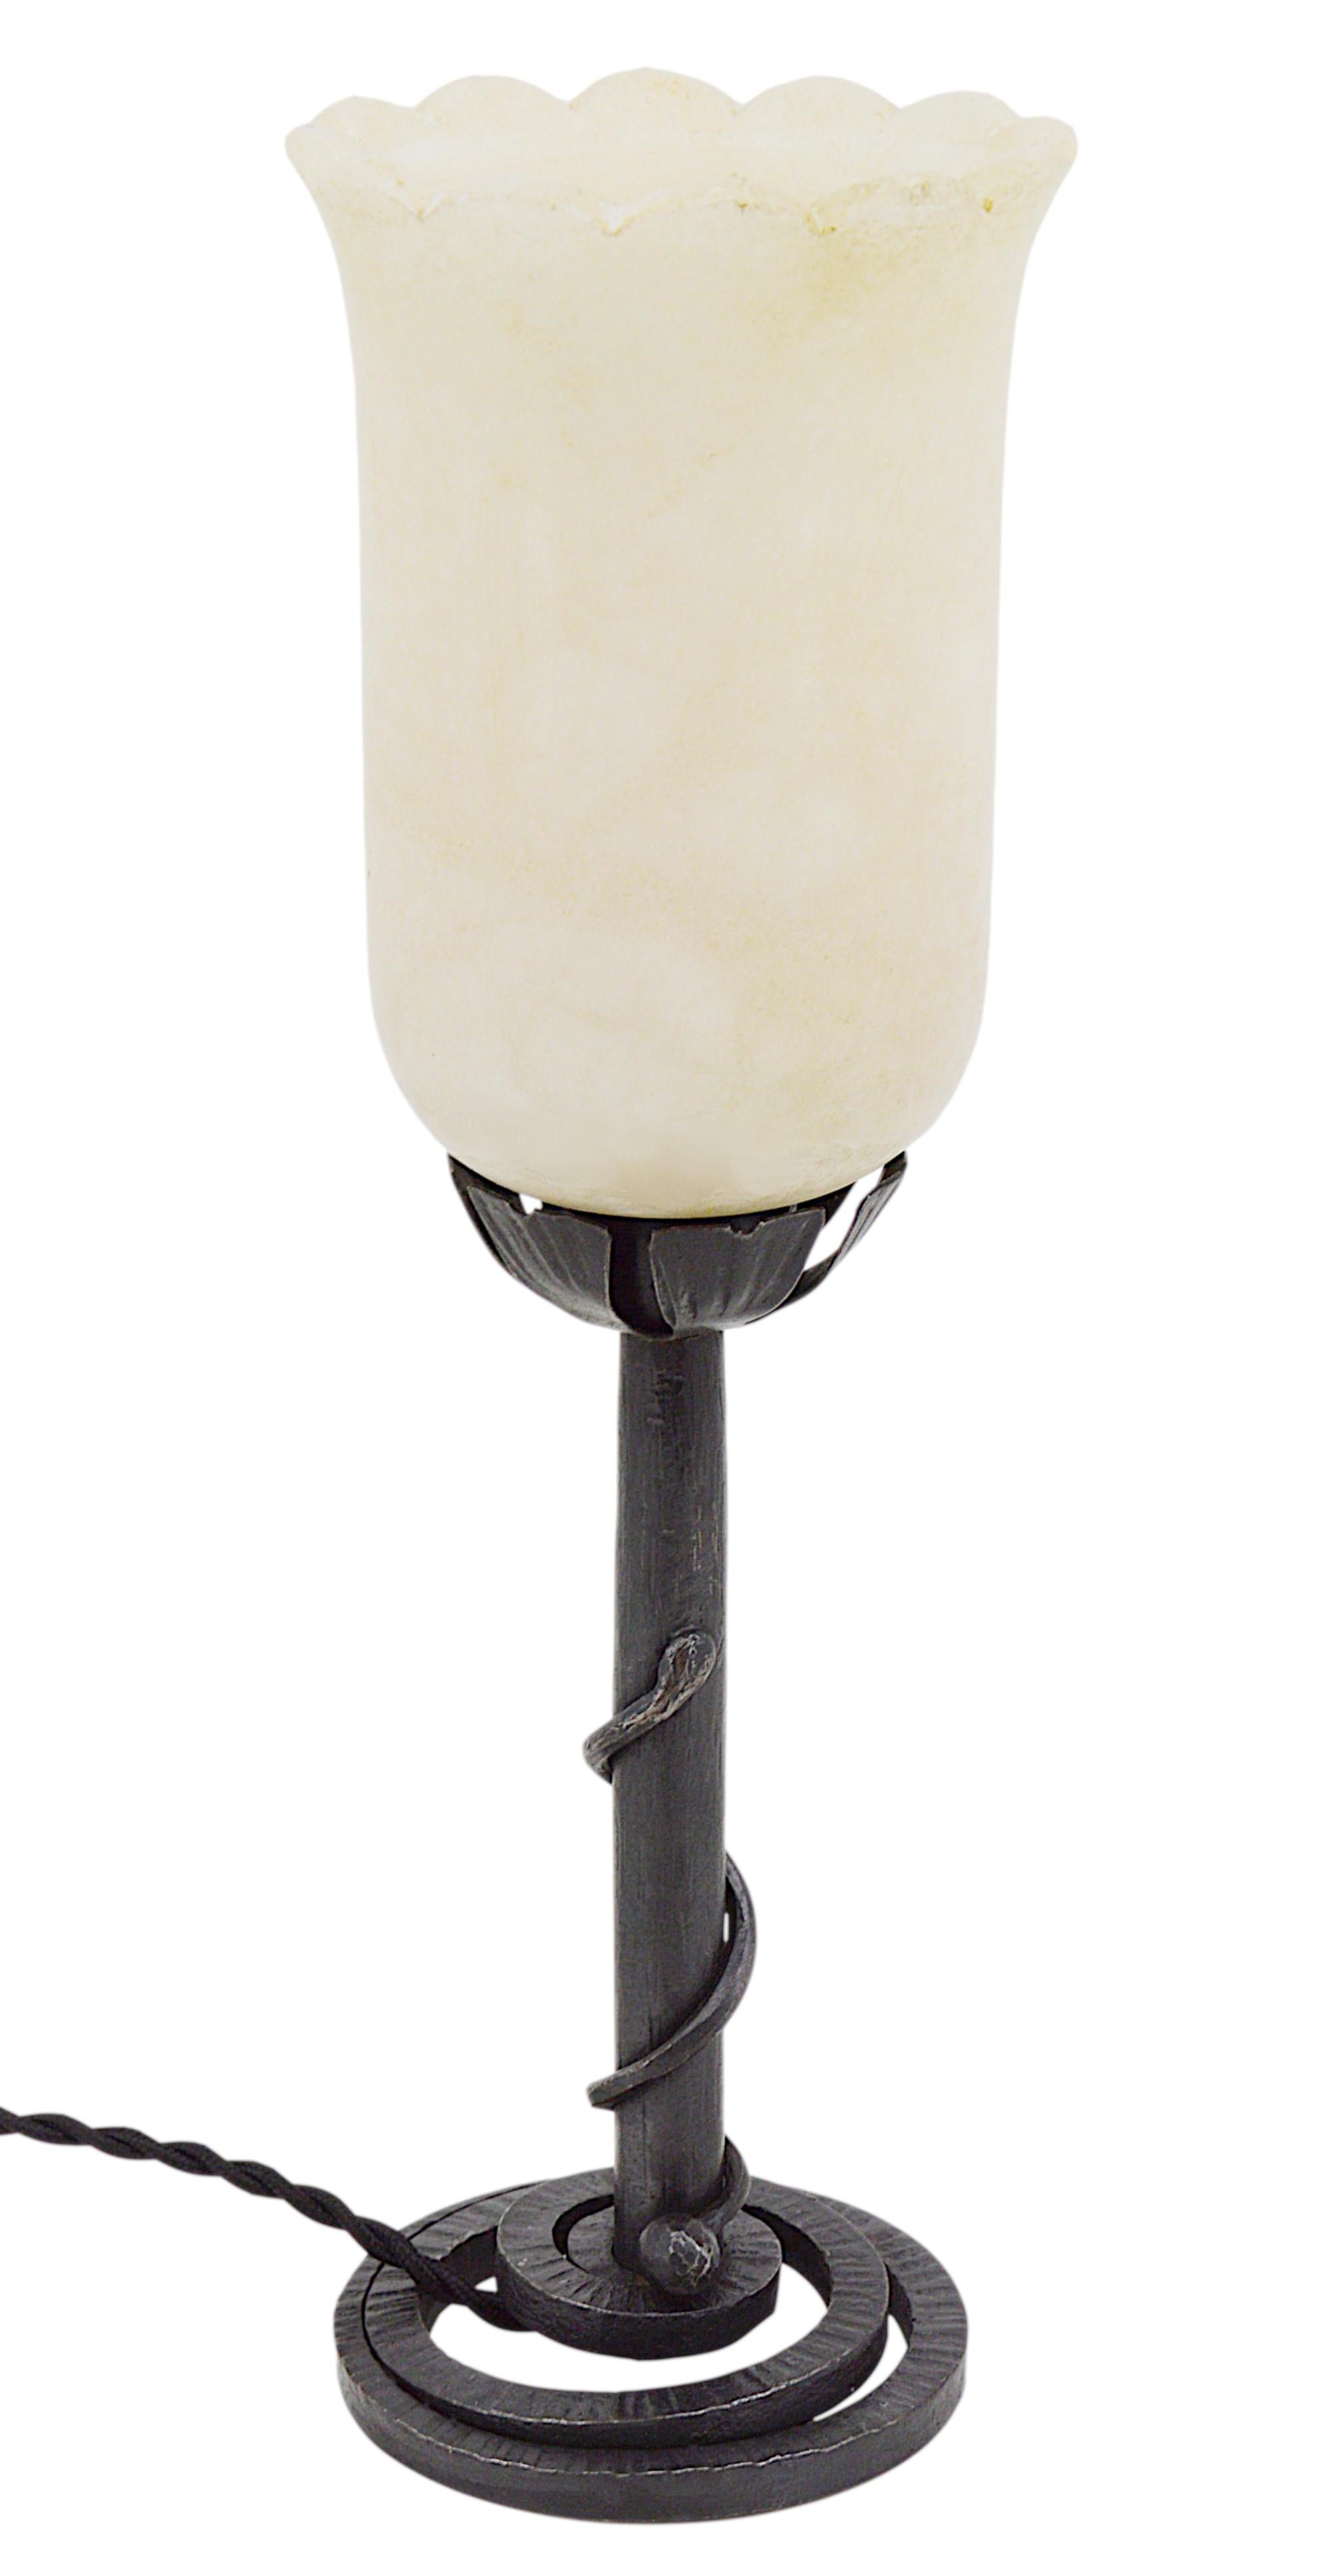 Lampe de table Art déco française, France, années 1920. Abat-jour moderniste classique en albâtre sur son socle en fer forgé symbolisant un serpent. La base est estampillée 